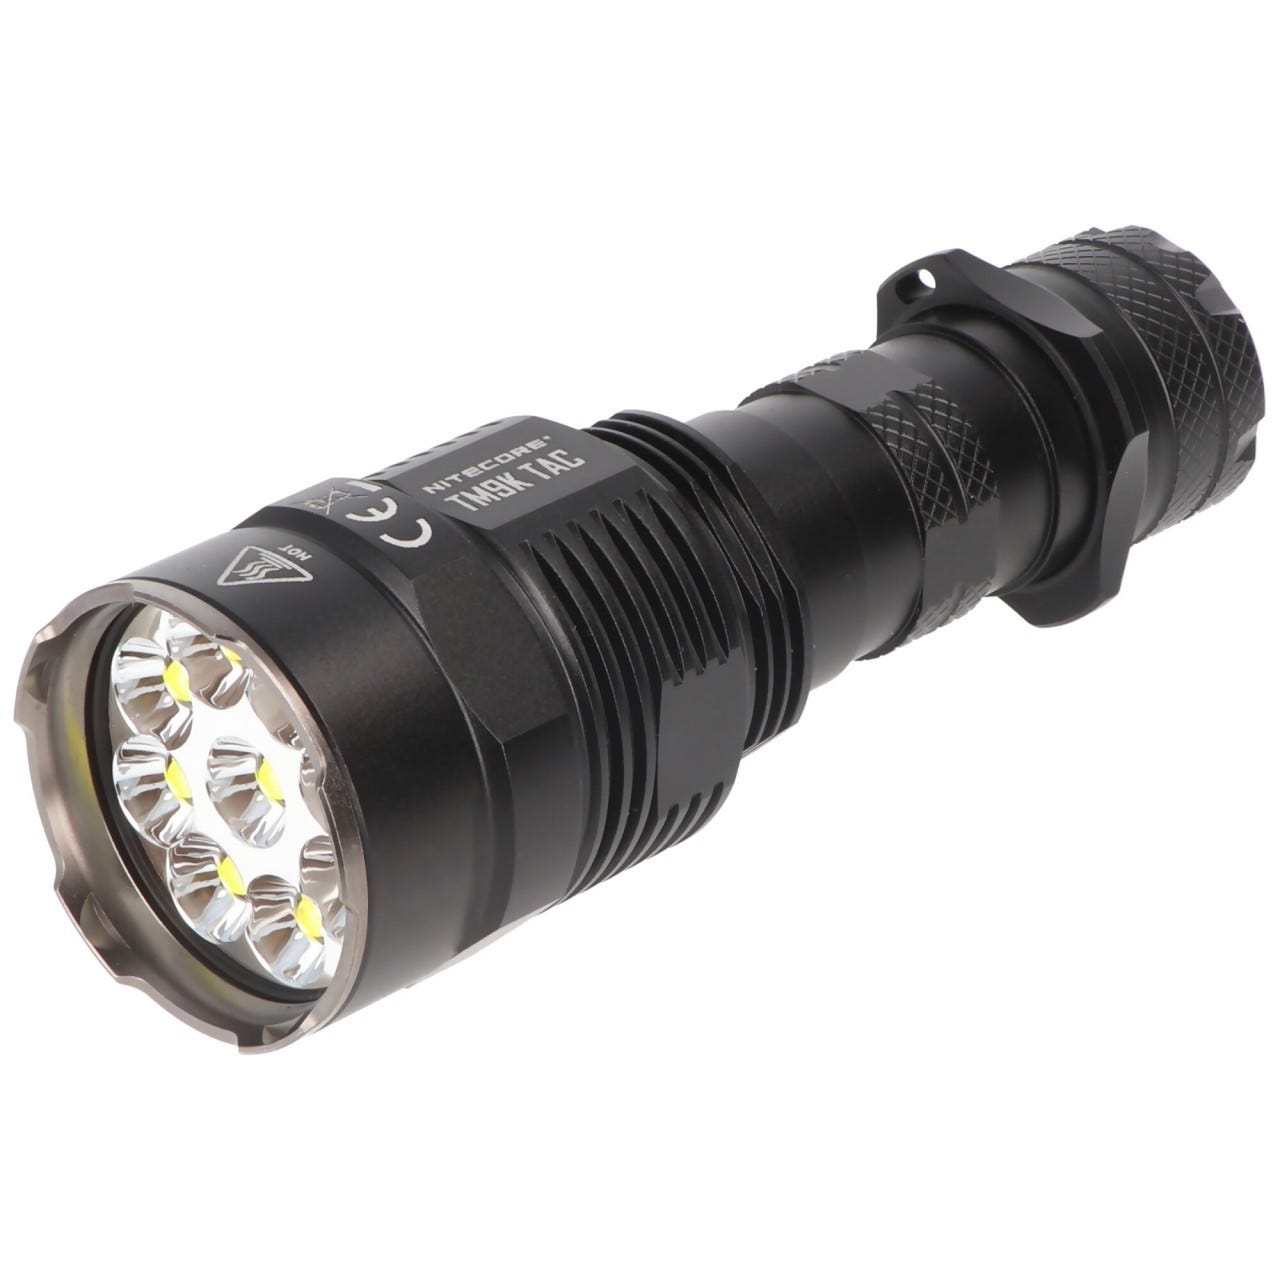 Lampe de poche LED Nitecore TM9K TAC, 9800 lumens, TurboReady